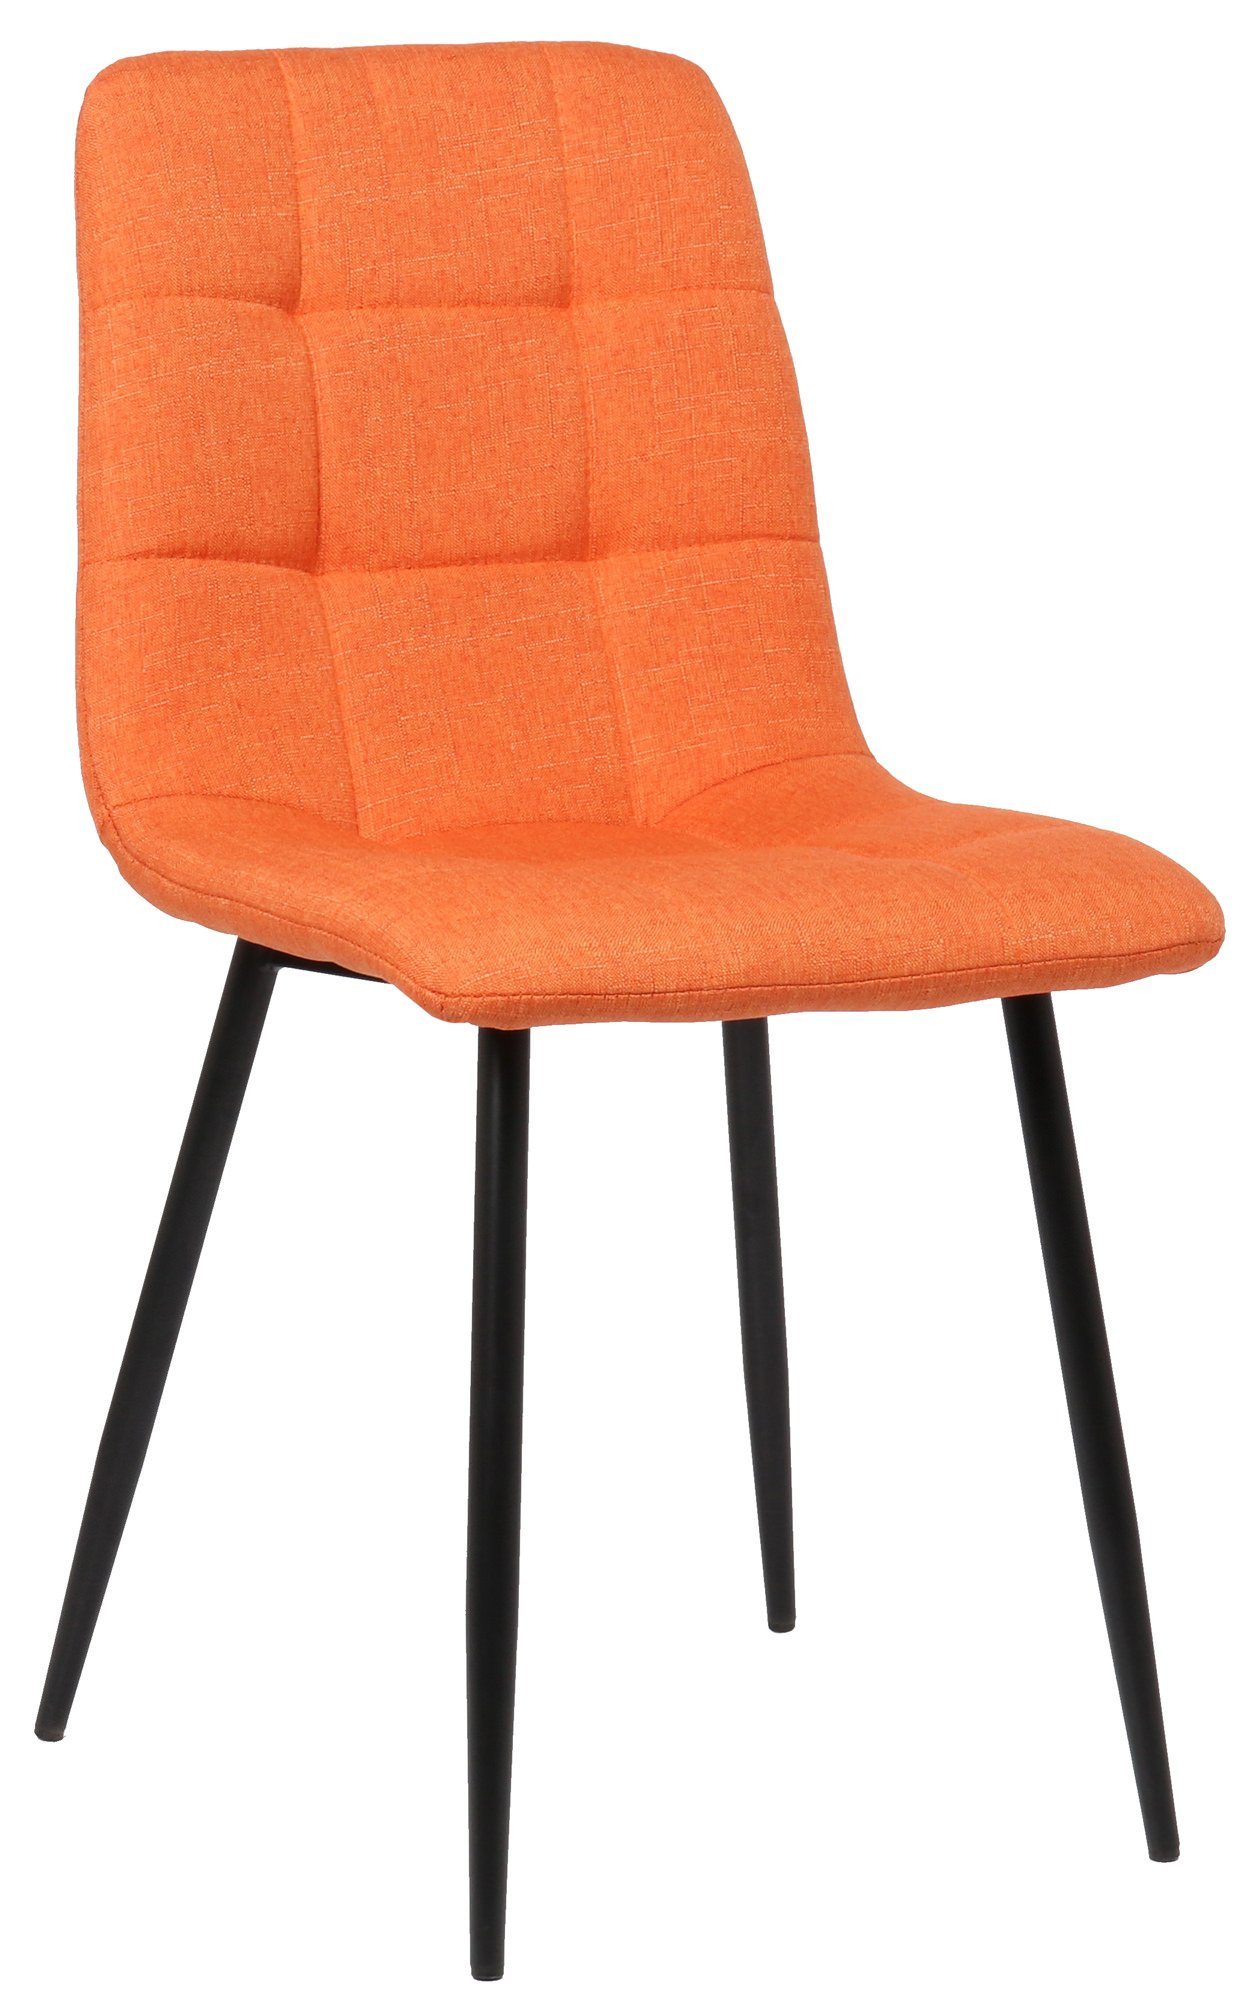 TPFLiving Esszimmerstuhl Till mit hochwertig gepolsterter Sitzfläche - Konferenzstuhl (Küchenstuhl - Esstischstuhl - Wohnzimmerstuhl - Polsterstuhl), Gestell: Metall schwarz - Sitzfläche: Stoff orange